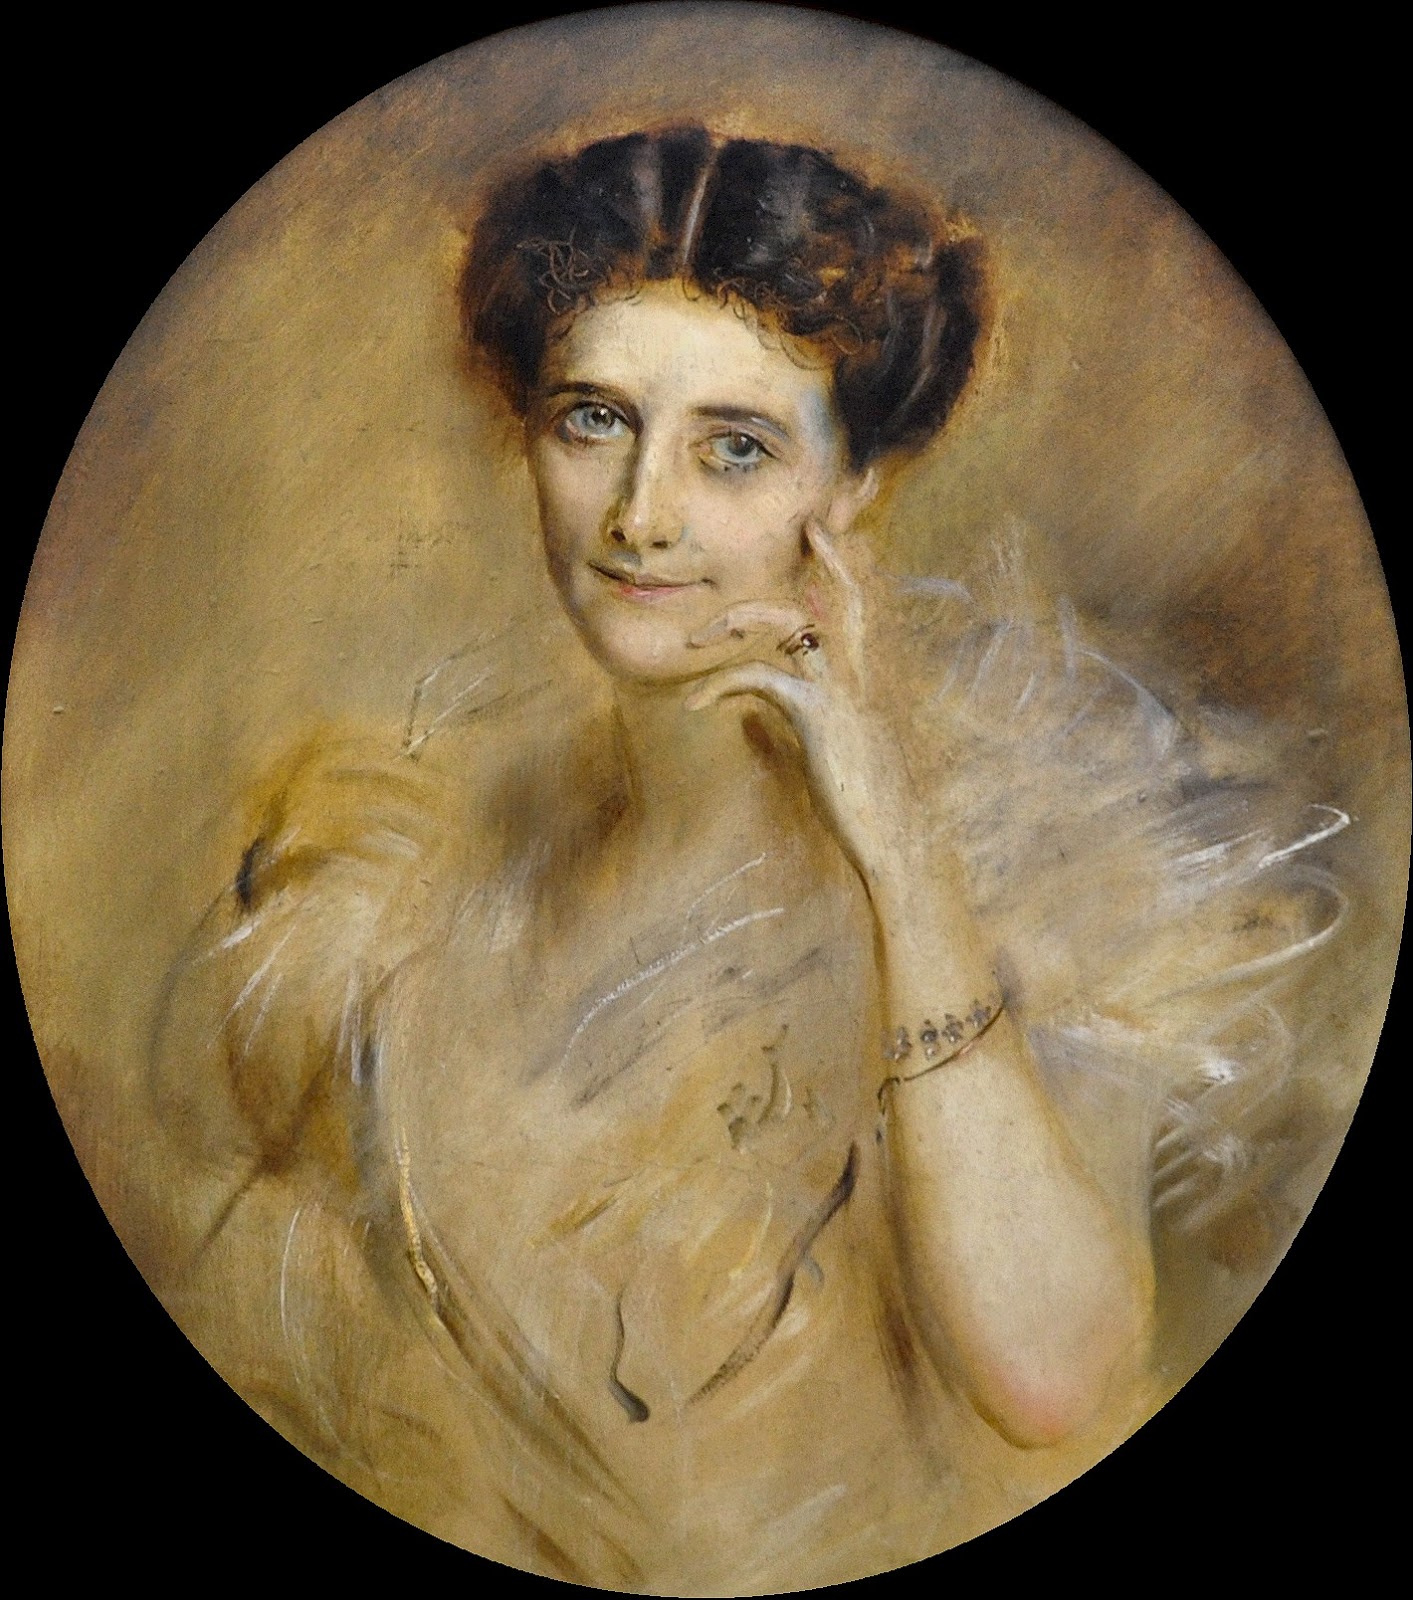 Franz von Lenbach ~ Pintor de retrato